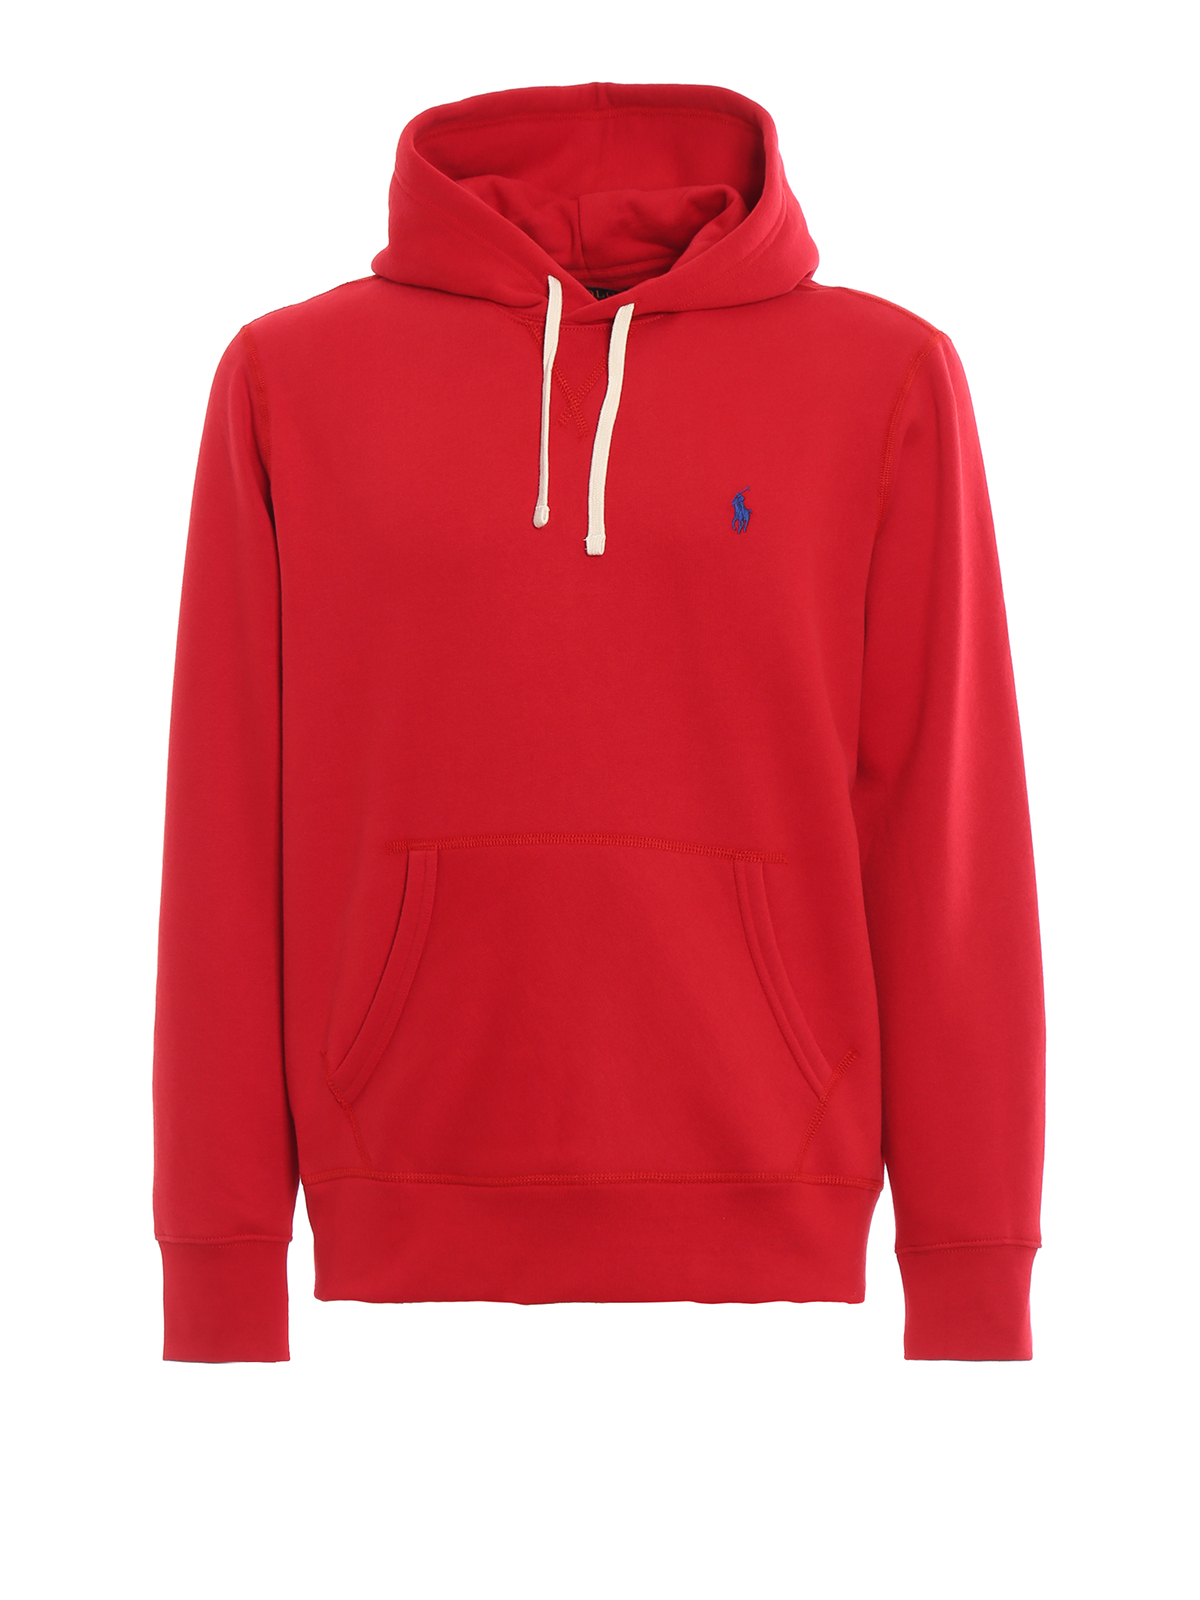 Sweatshirts & Sweaters Polo Ralph Lauren - Red fleece hoodie - 710766778002